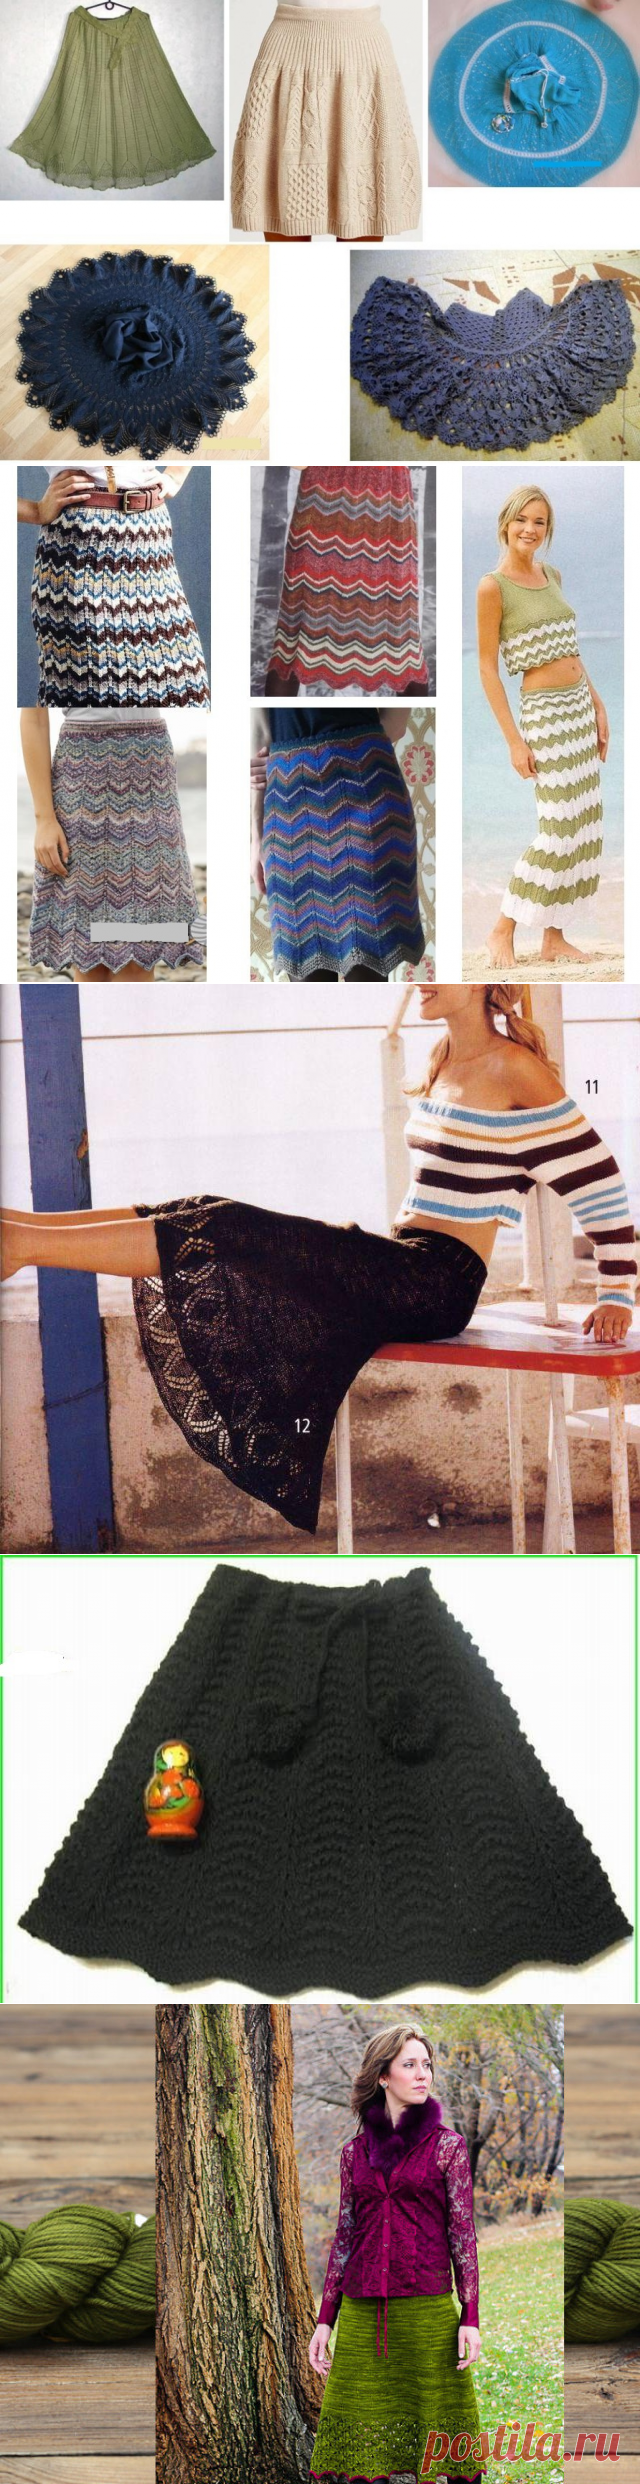 Юбка спицами для женщин: модели, узоры, фото, схемы и описание. Как связать красивую модную юбку спицами для девушки и женщины теплую зимнюю, летнюю, короткую, длинную, прямую и расклешенную?